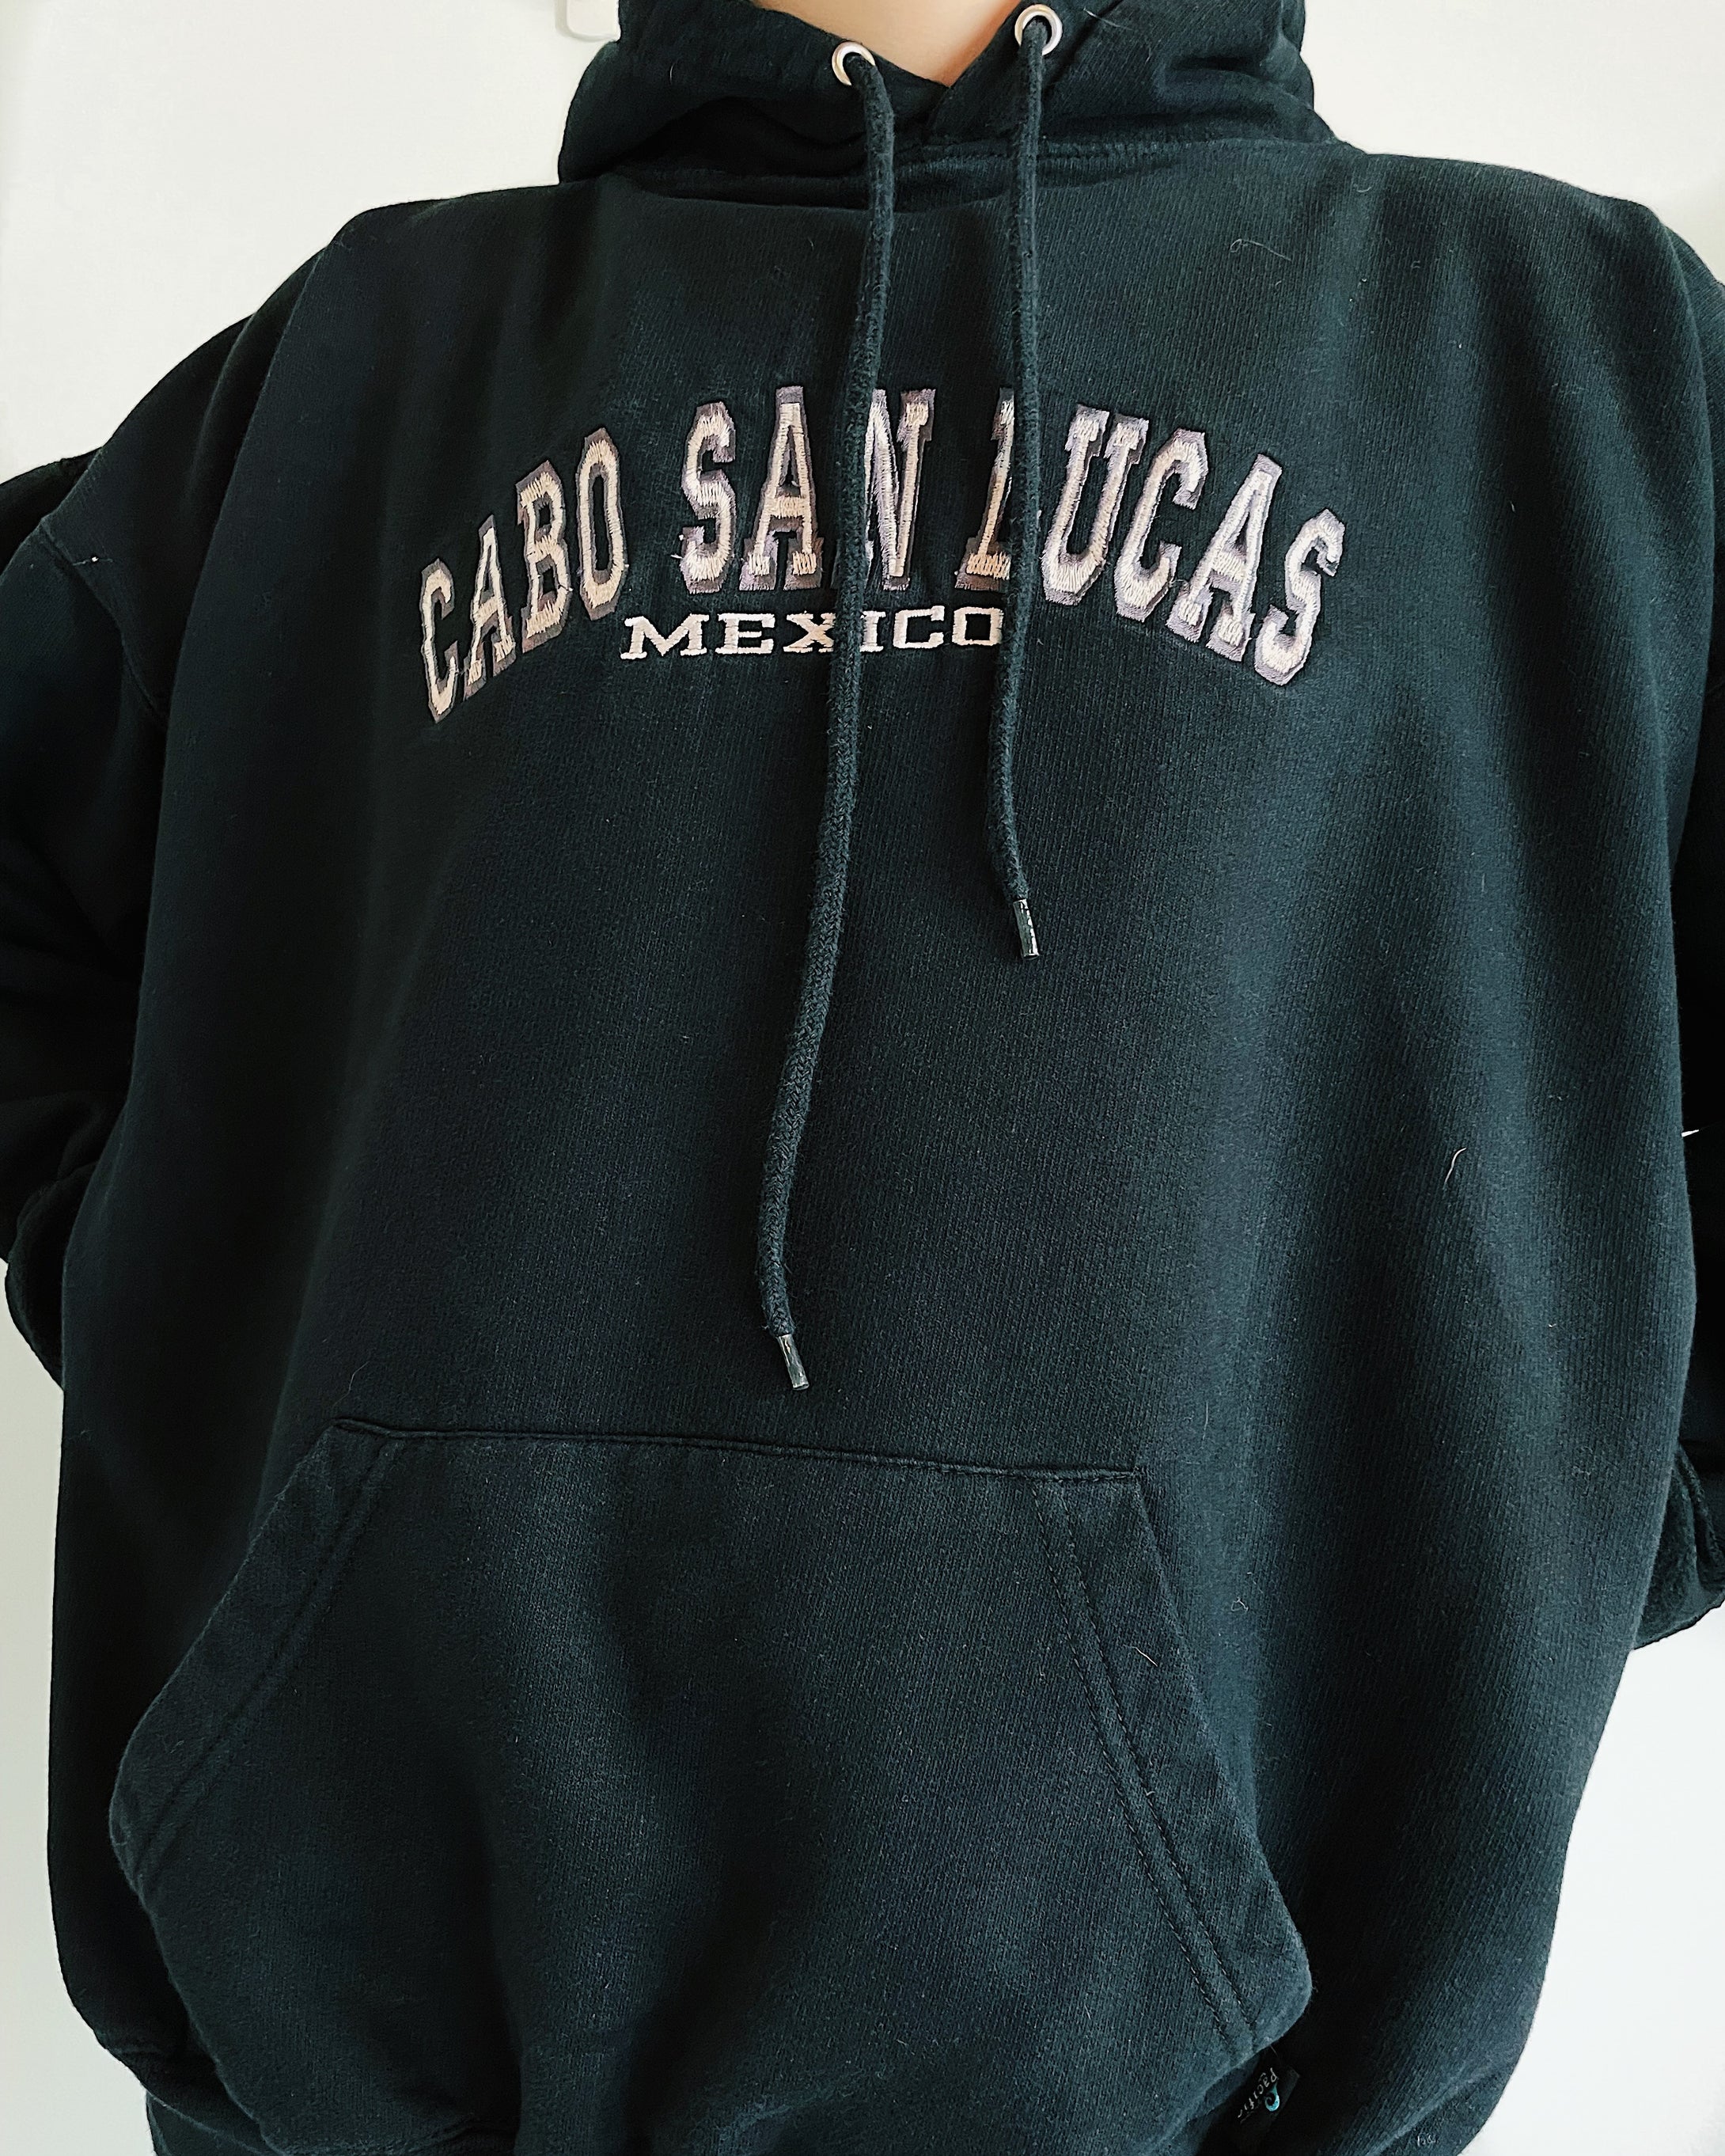 Cabo San Lucas hoode